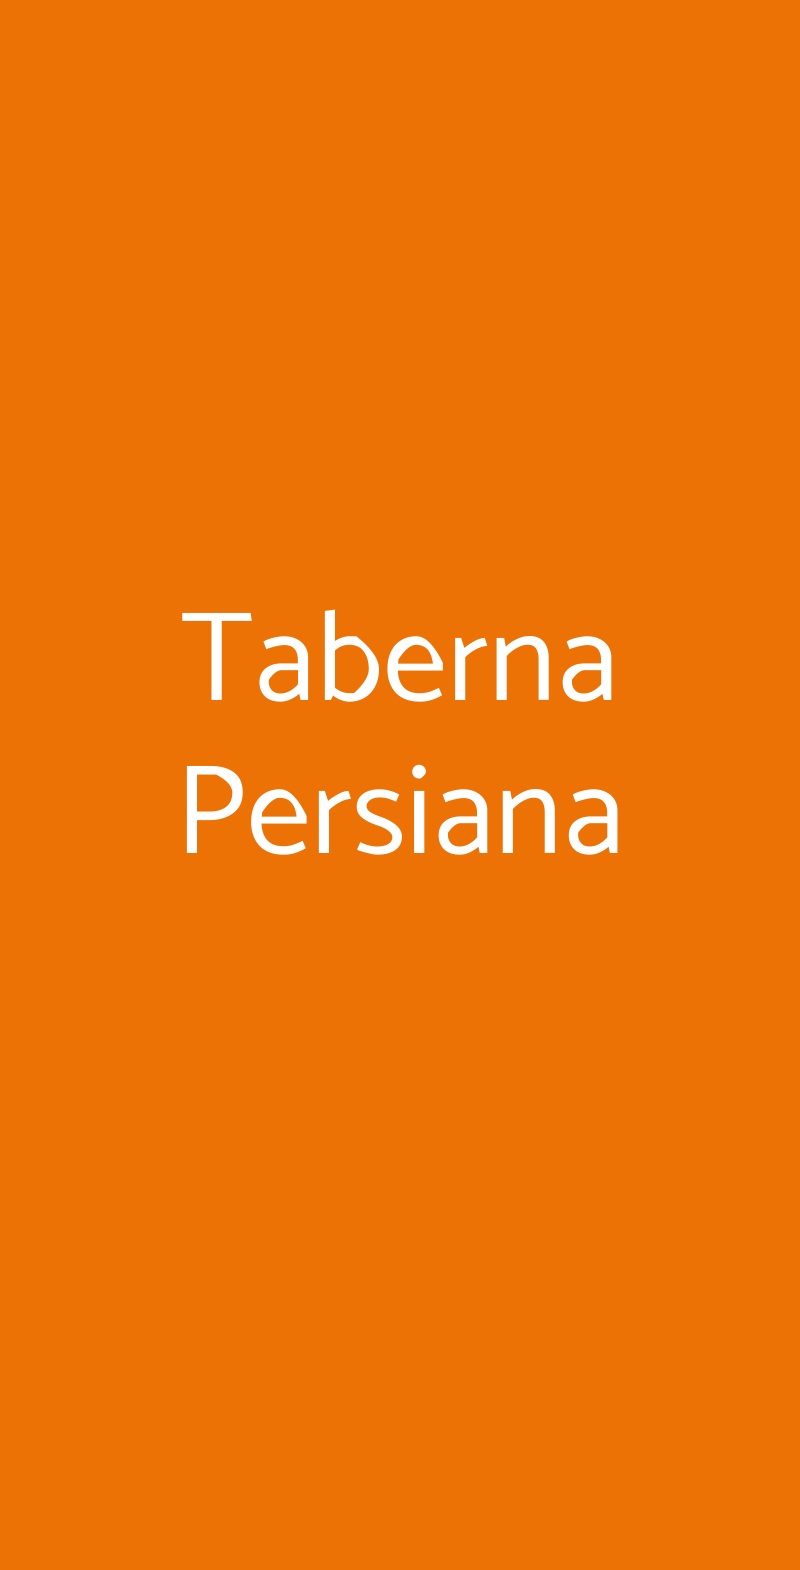 Taberna Persiana Roma menù 1 pagina